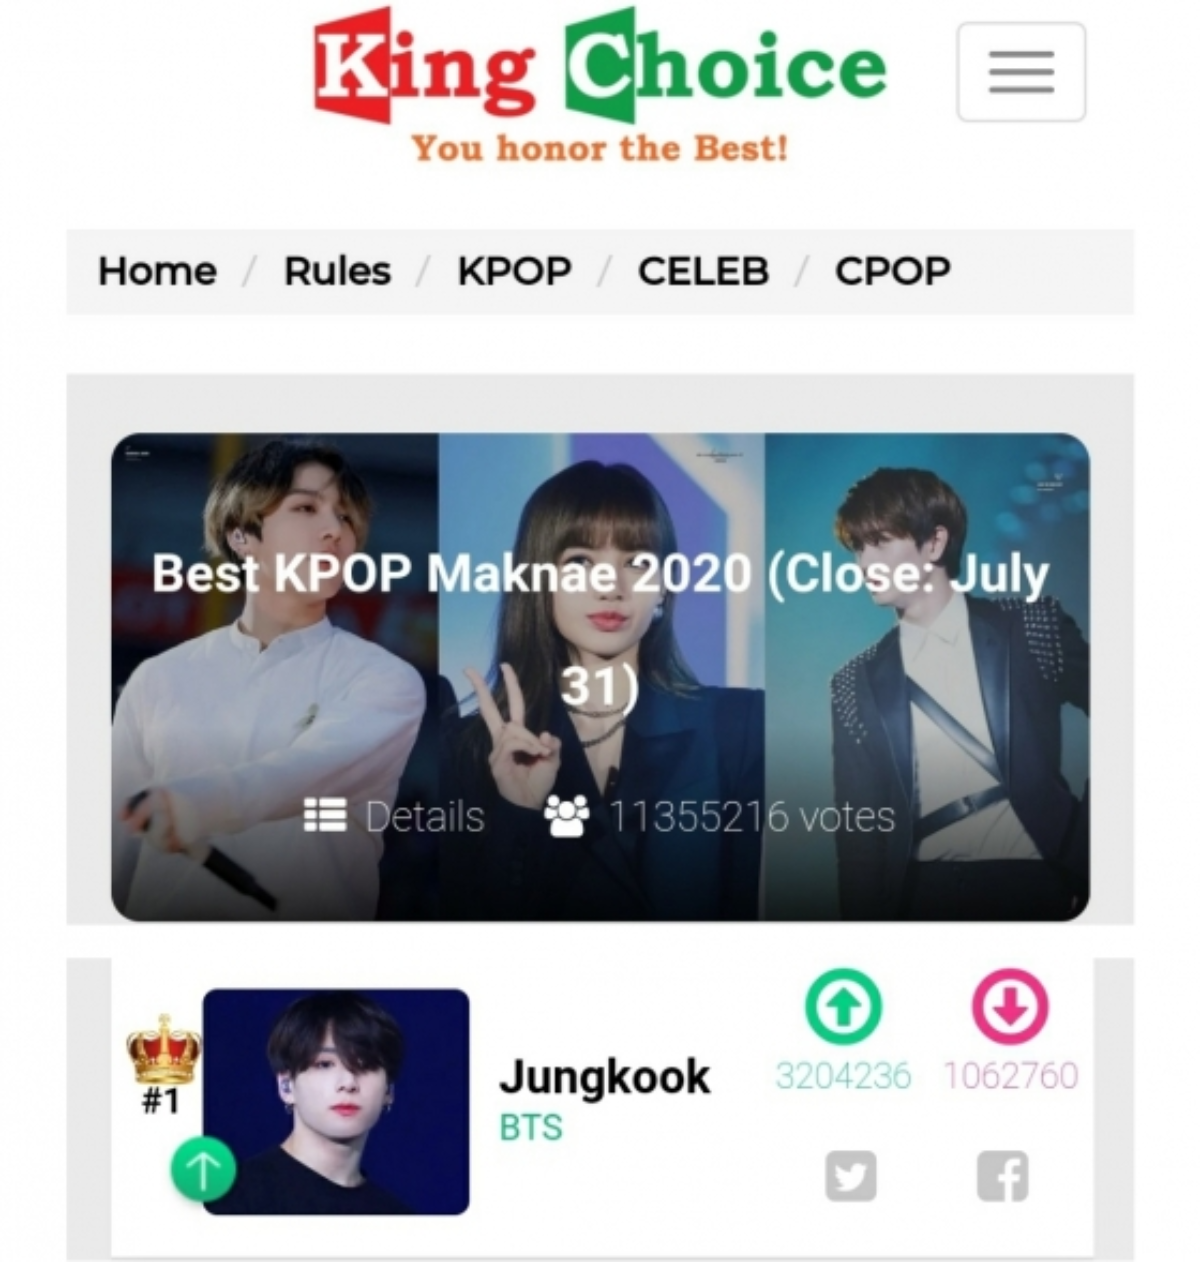 BTS Jungkook #1 'Best KPOP Maknae 2020'